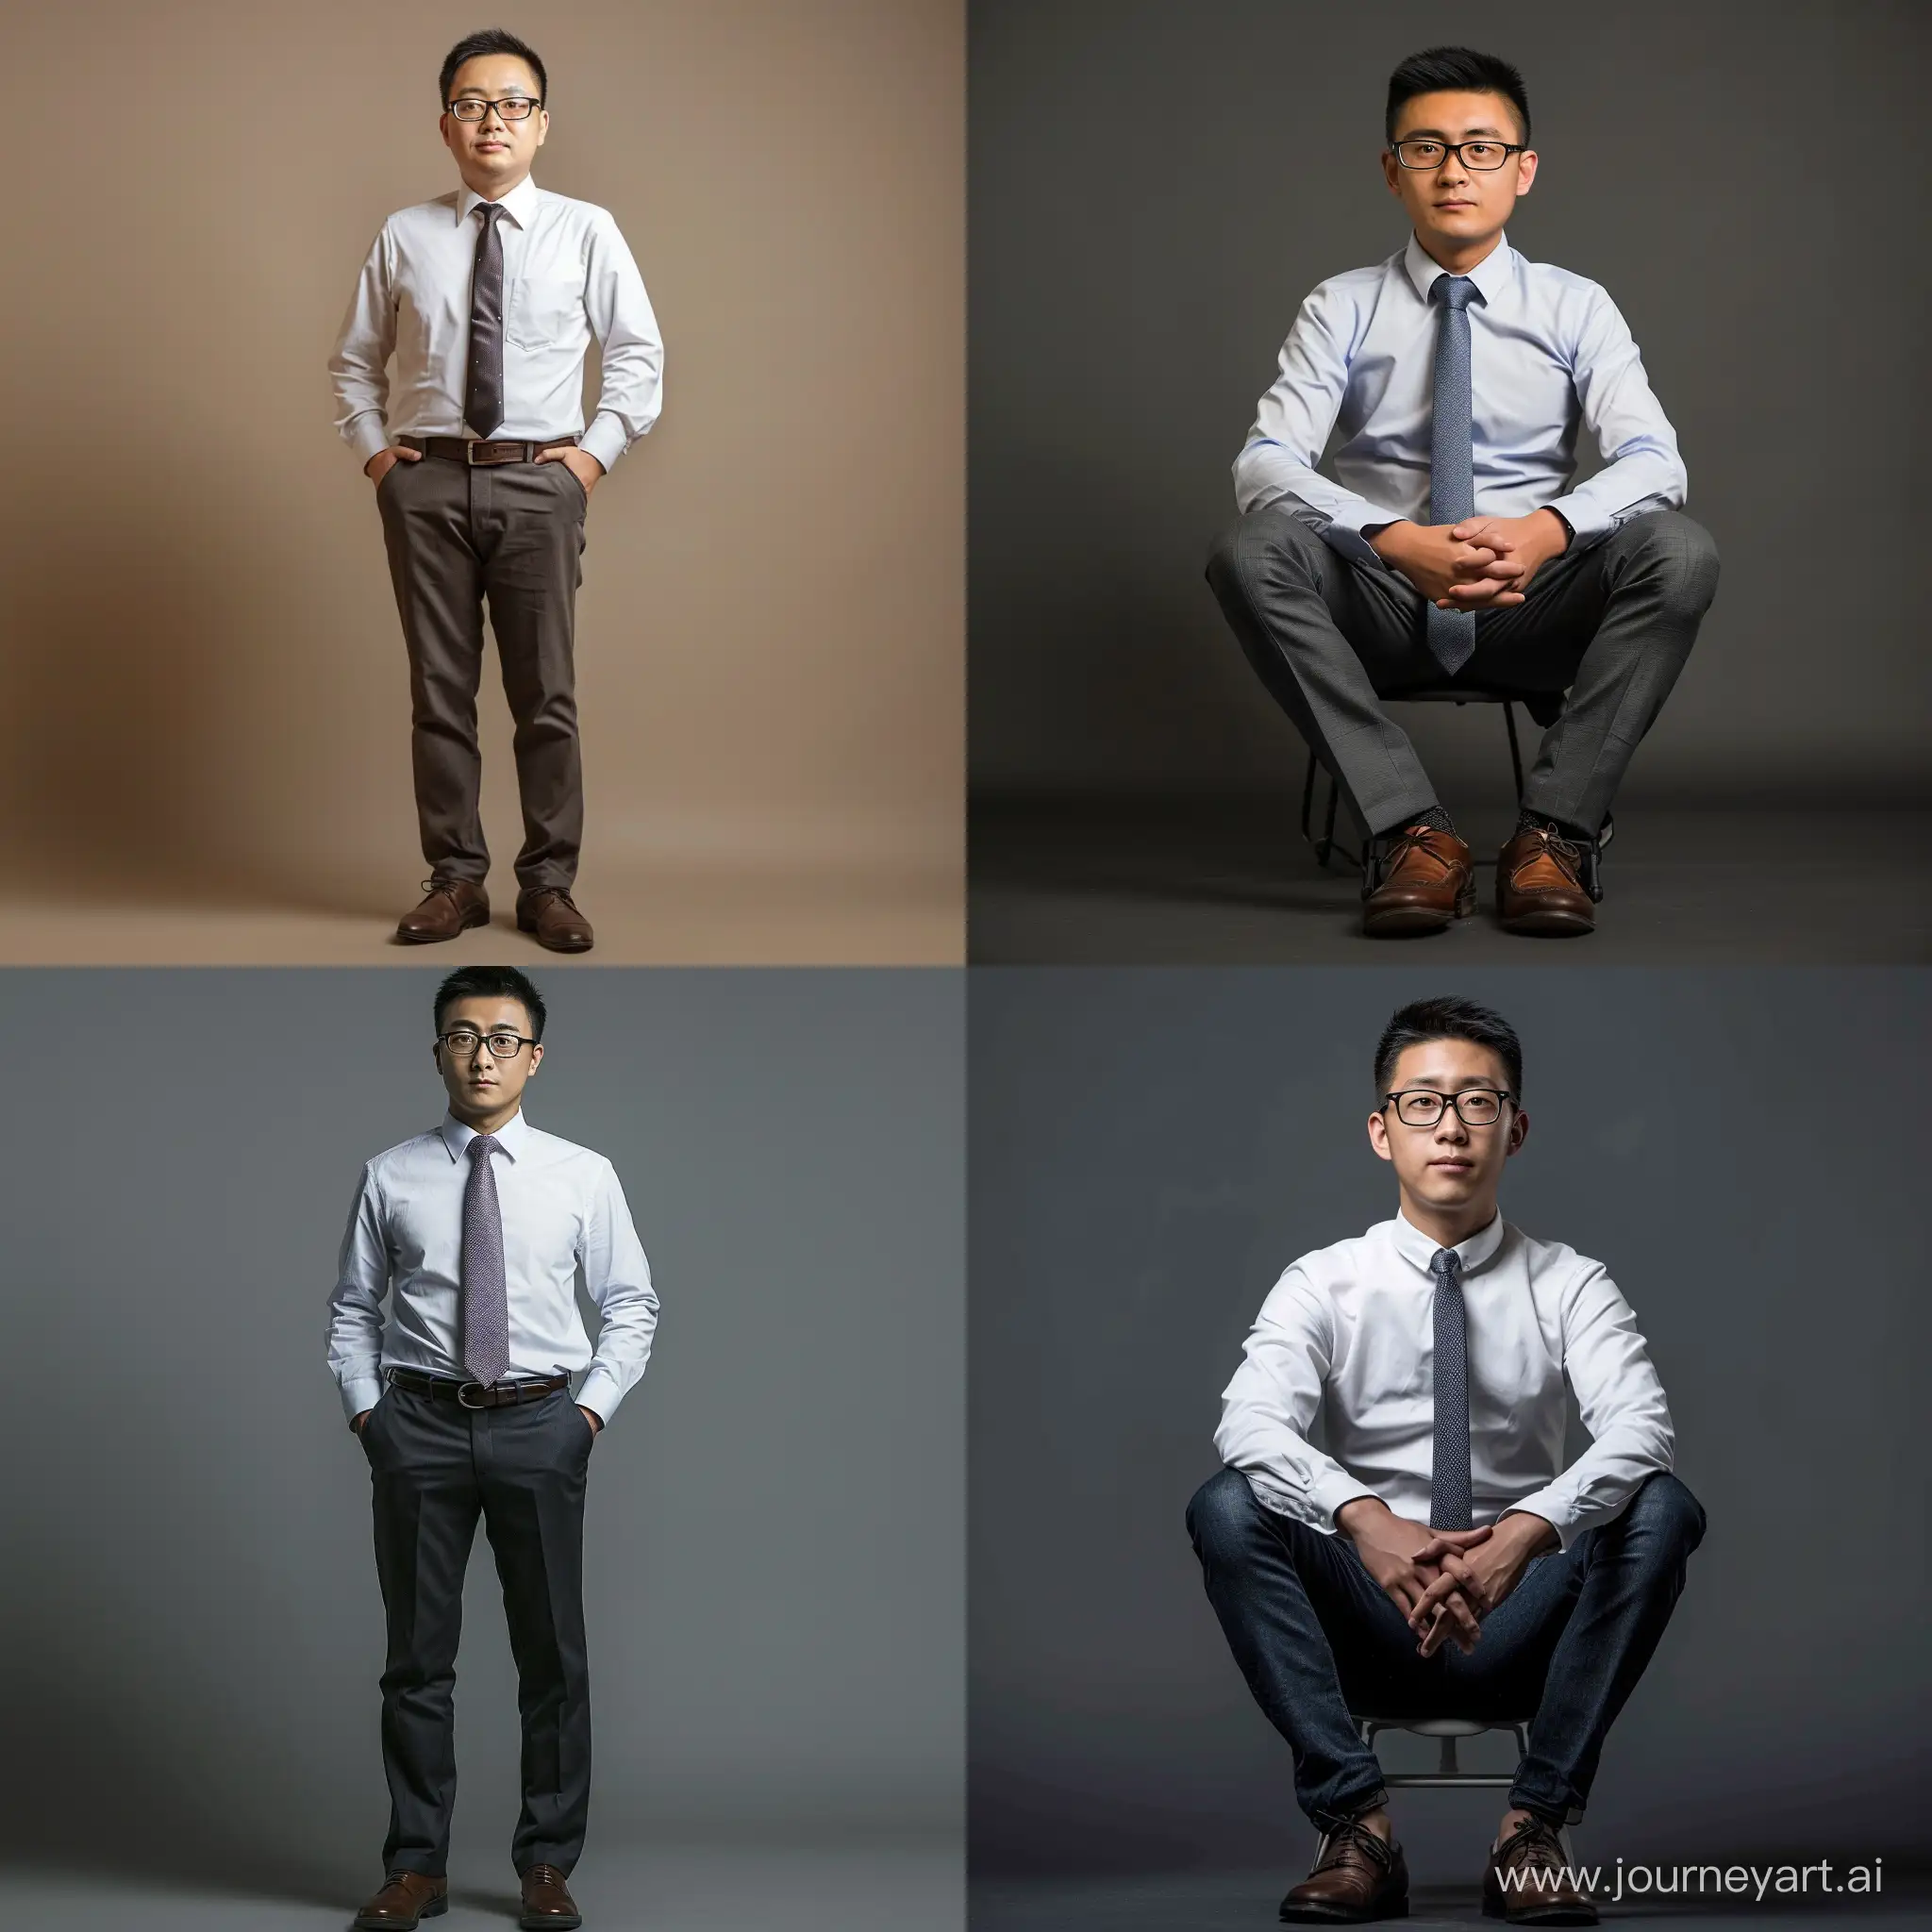 中国人，正装，领带，皮鞋，半框眼镜，领带，轻微胡渣，35岁左右，白领，职场男性